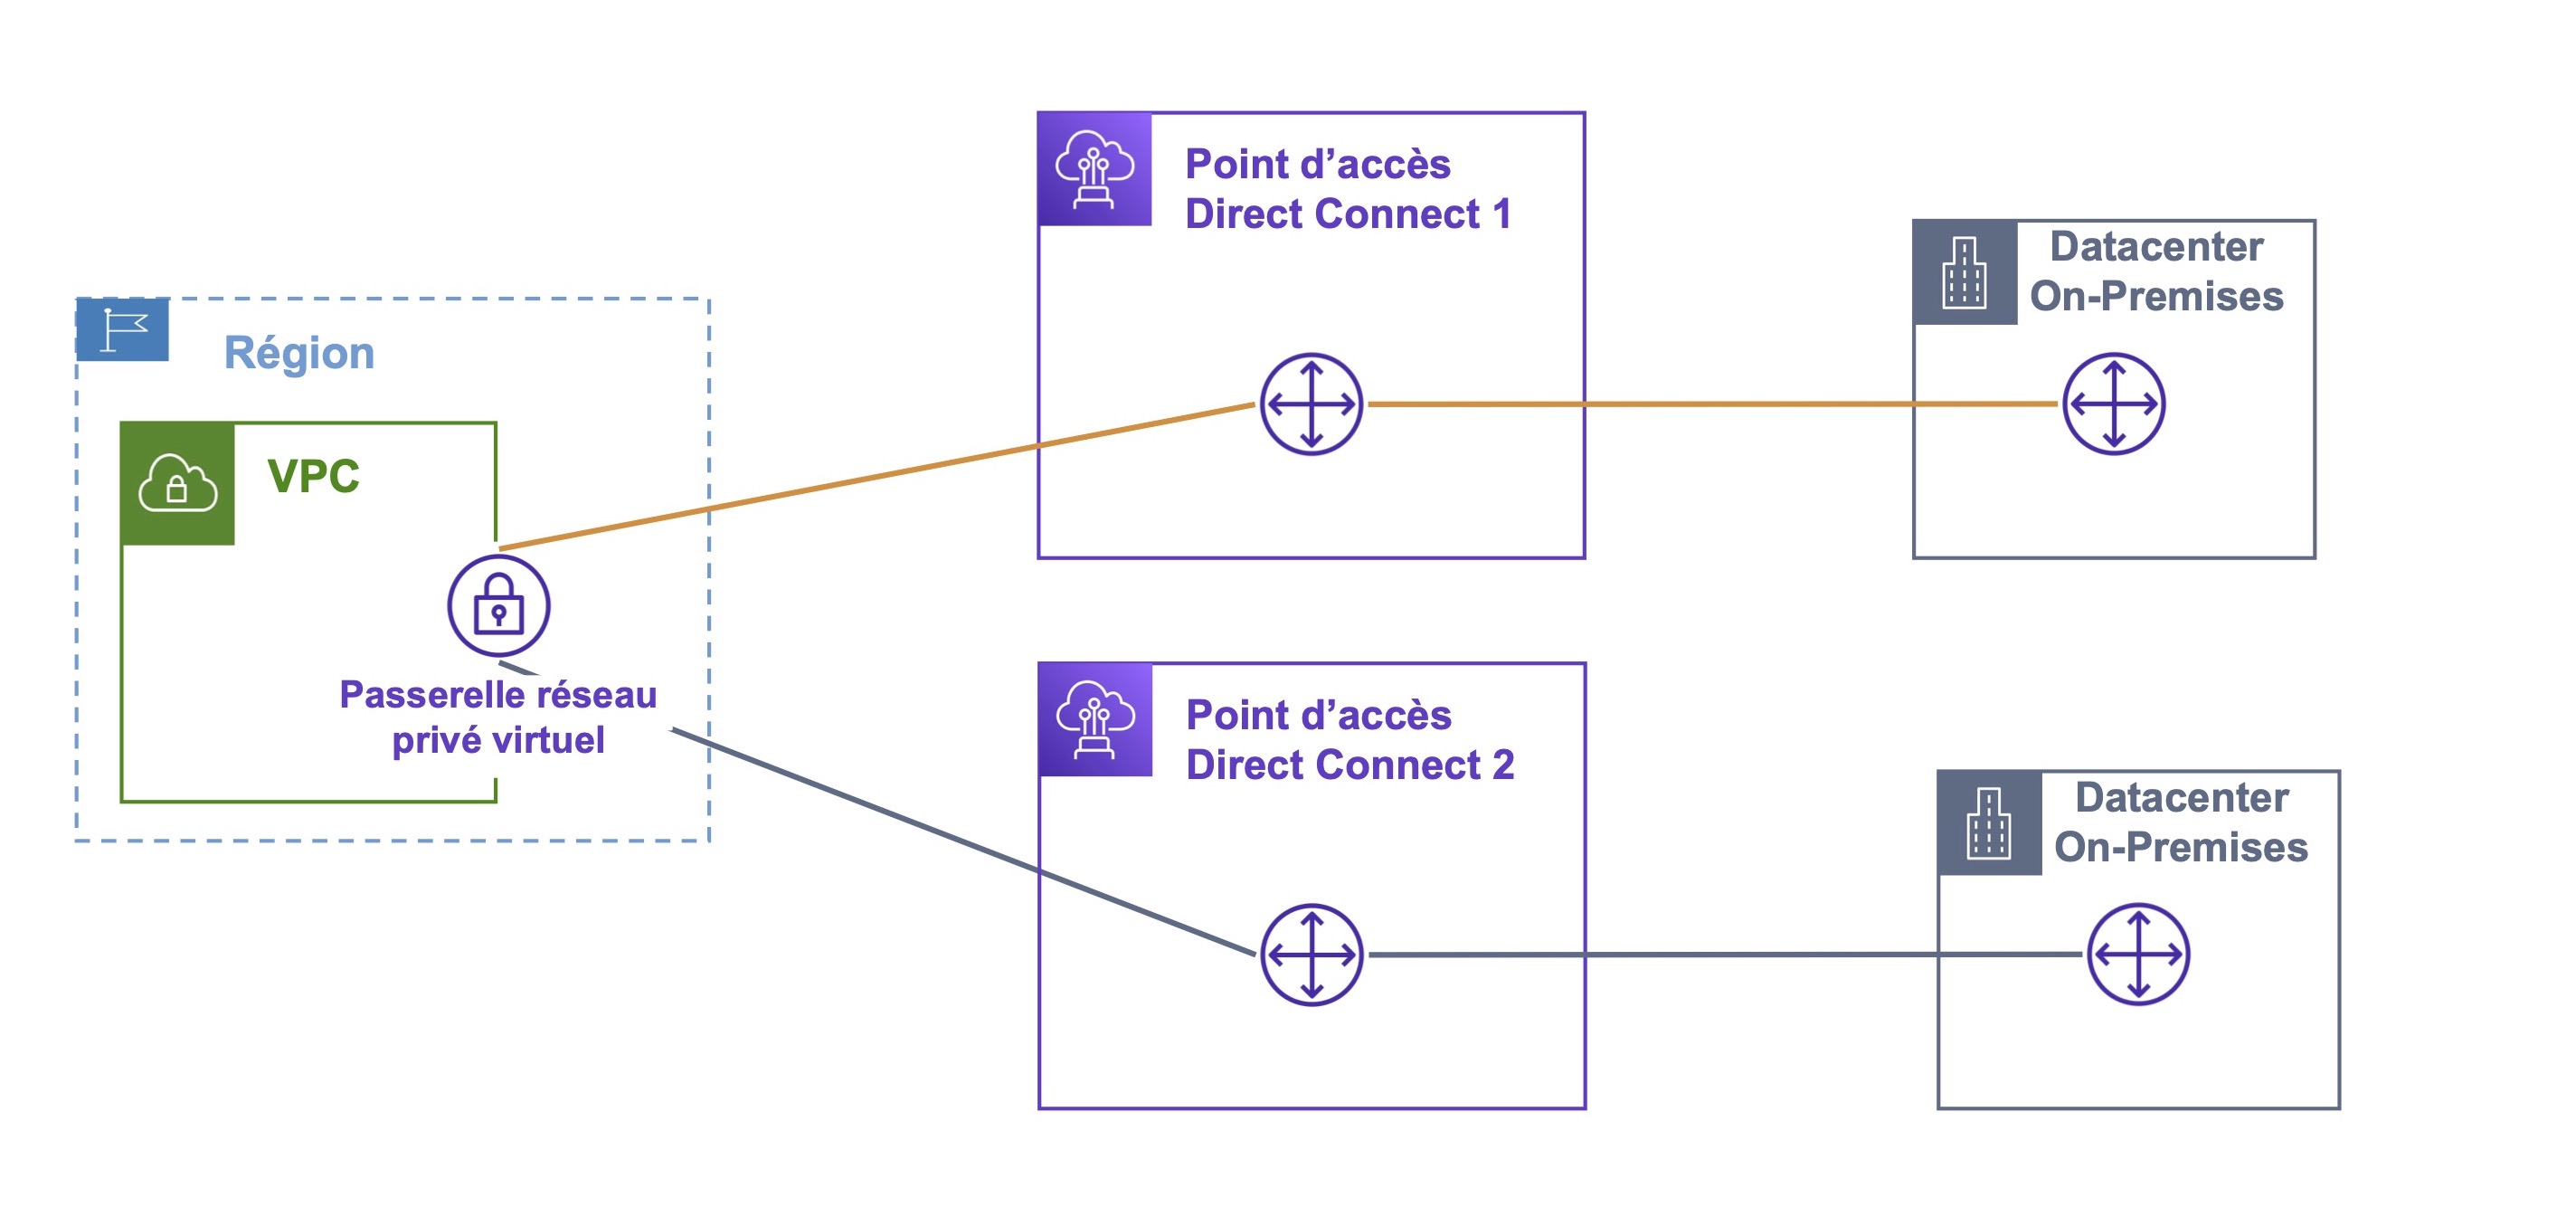 Deux chemins mènent de la passerelle réseau privé virtuel vers deux points d'accès Direct Connect, puis deux Datacenters on-premises